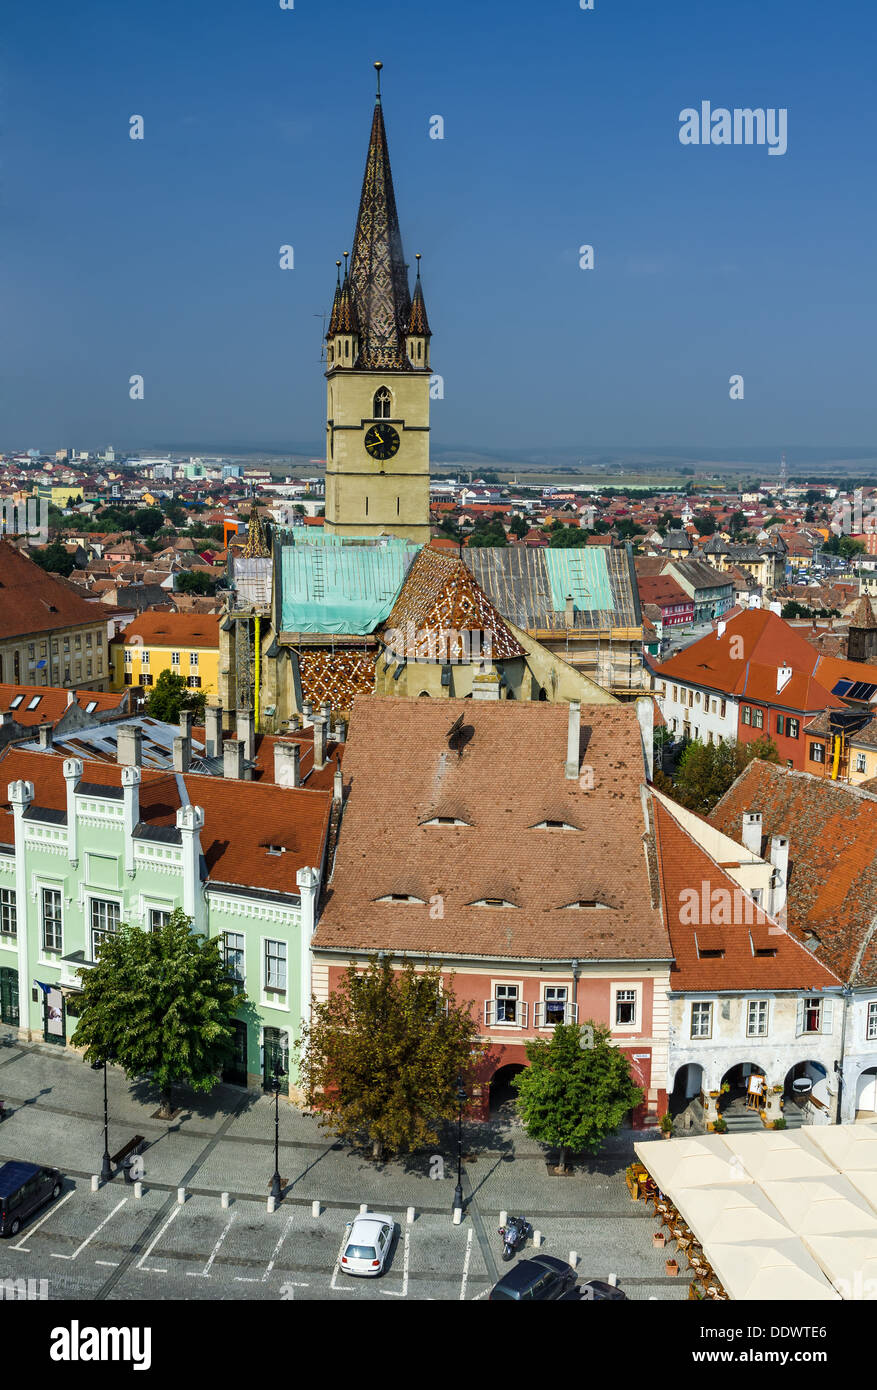 Blick auf kleinen und evangelische Kirche von Sibiu, entnommen Ratturm, sächsische Landschaft aus Siebenbürgen in Rumänien. Stockfoto